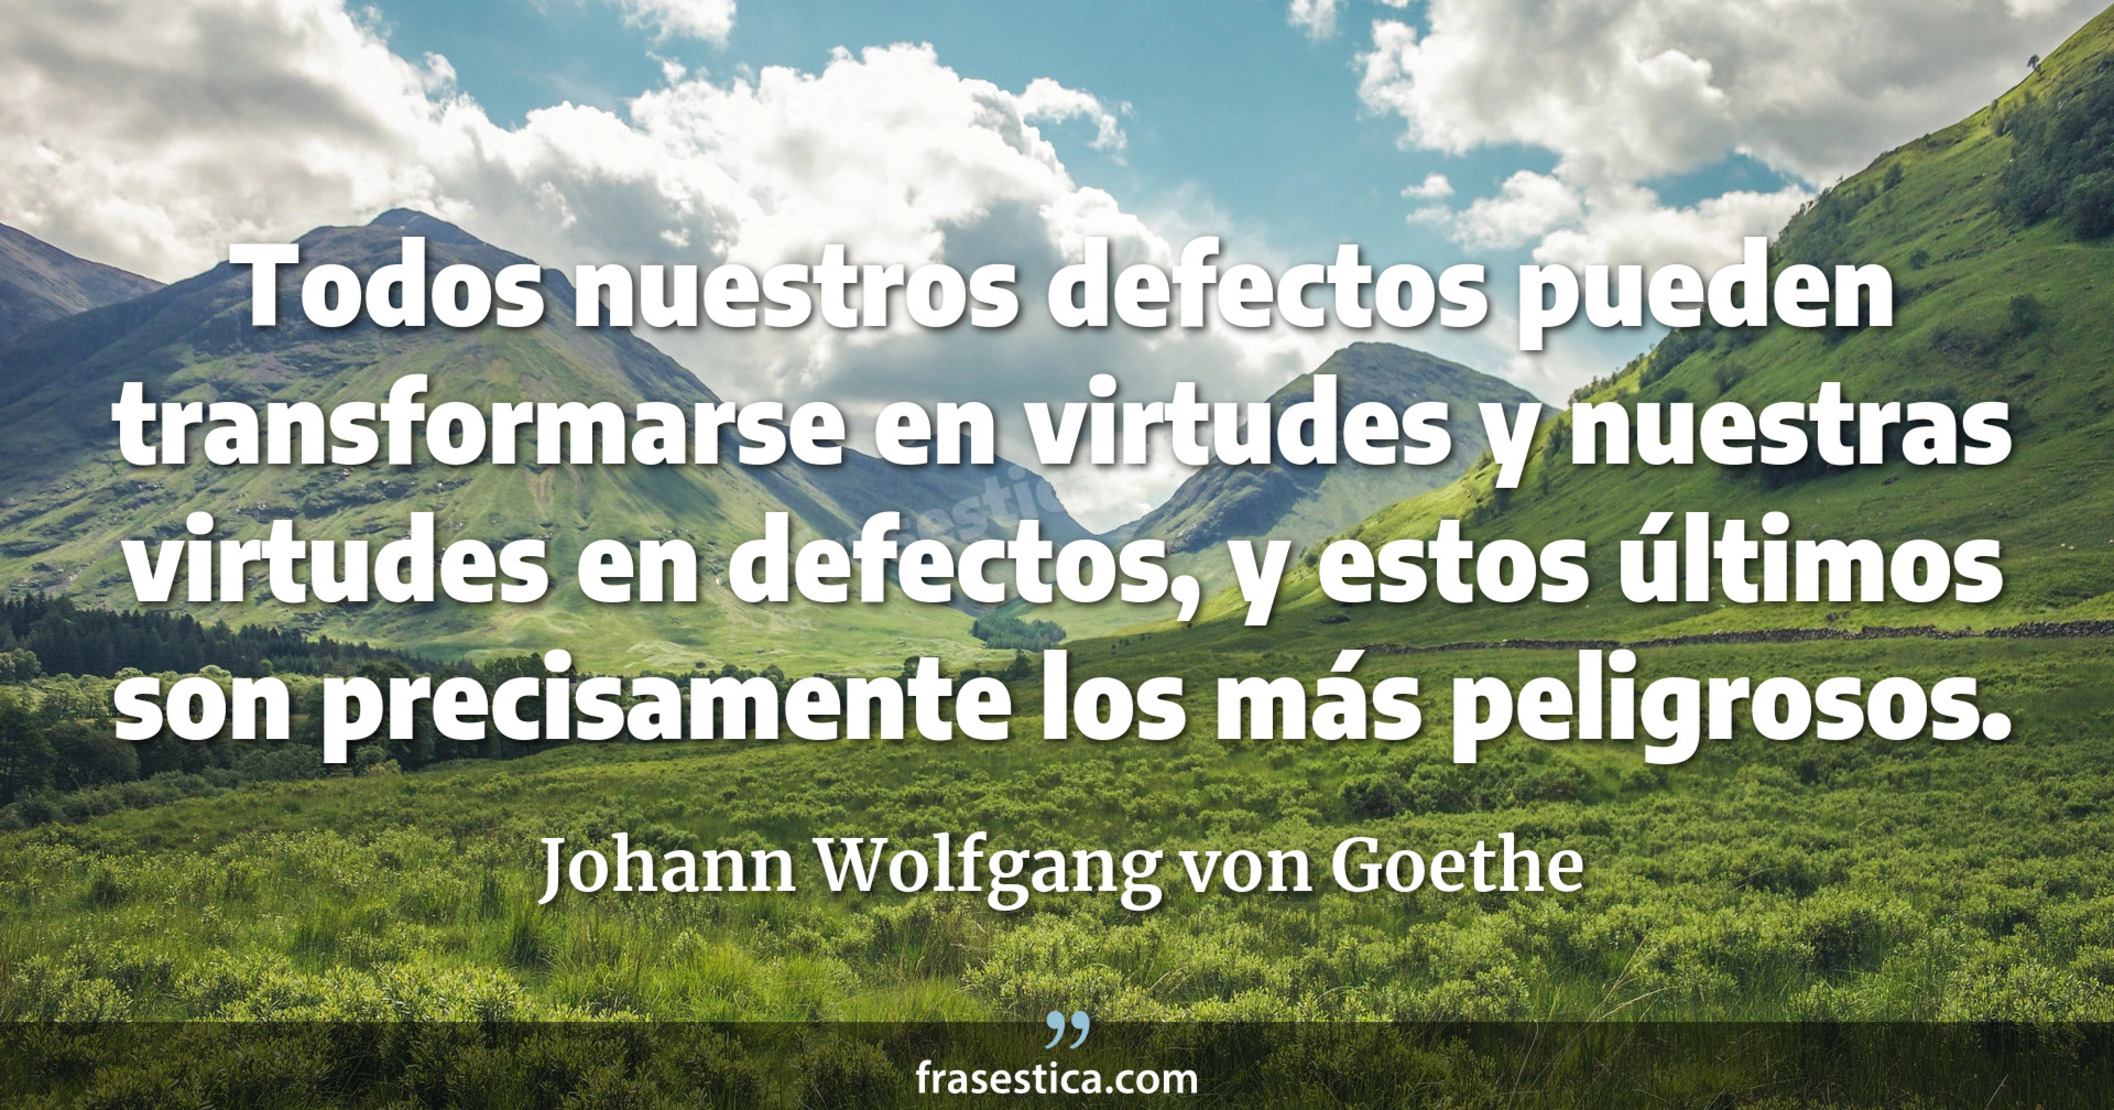 Todos nuestros defectos pueden transformarse en virtudes y nuestras virtudes en defectos, y estos últimos son precisamente los más peligrosos. - Johann Wolfgang von Goethe